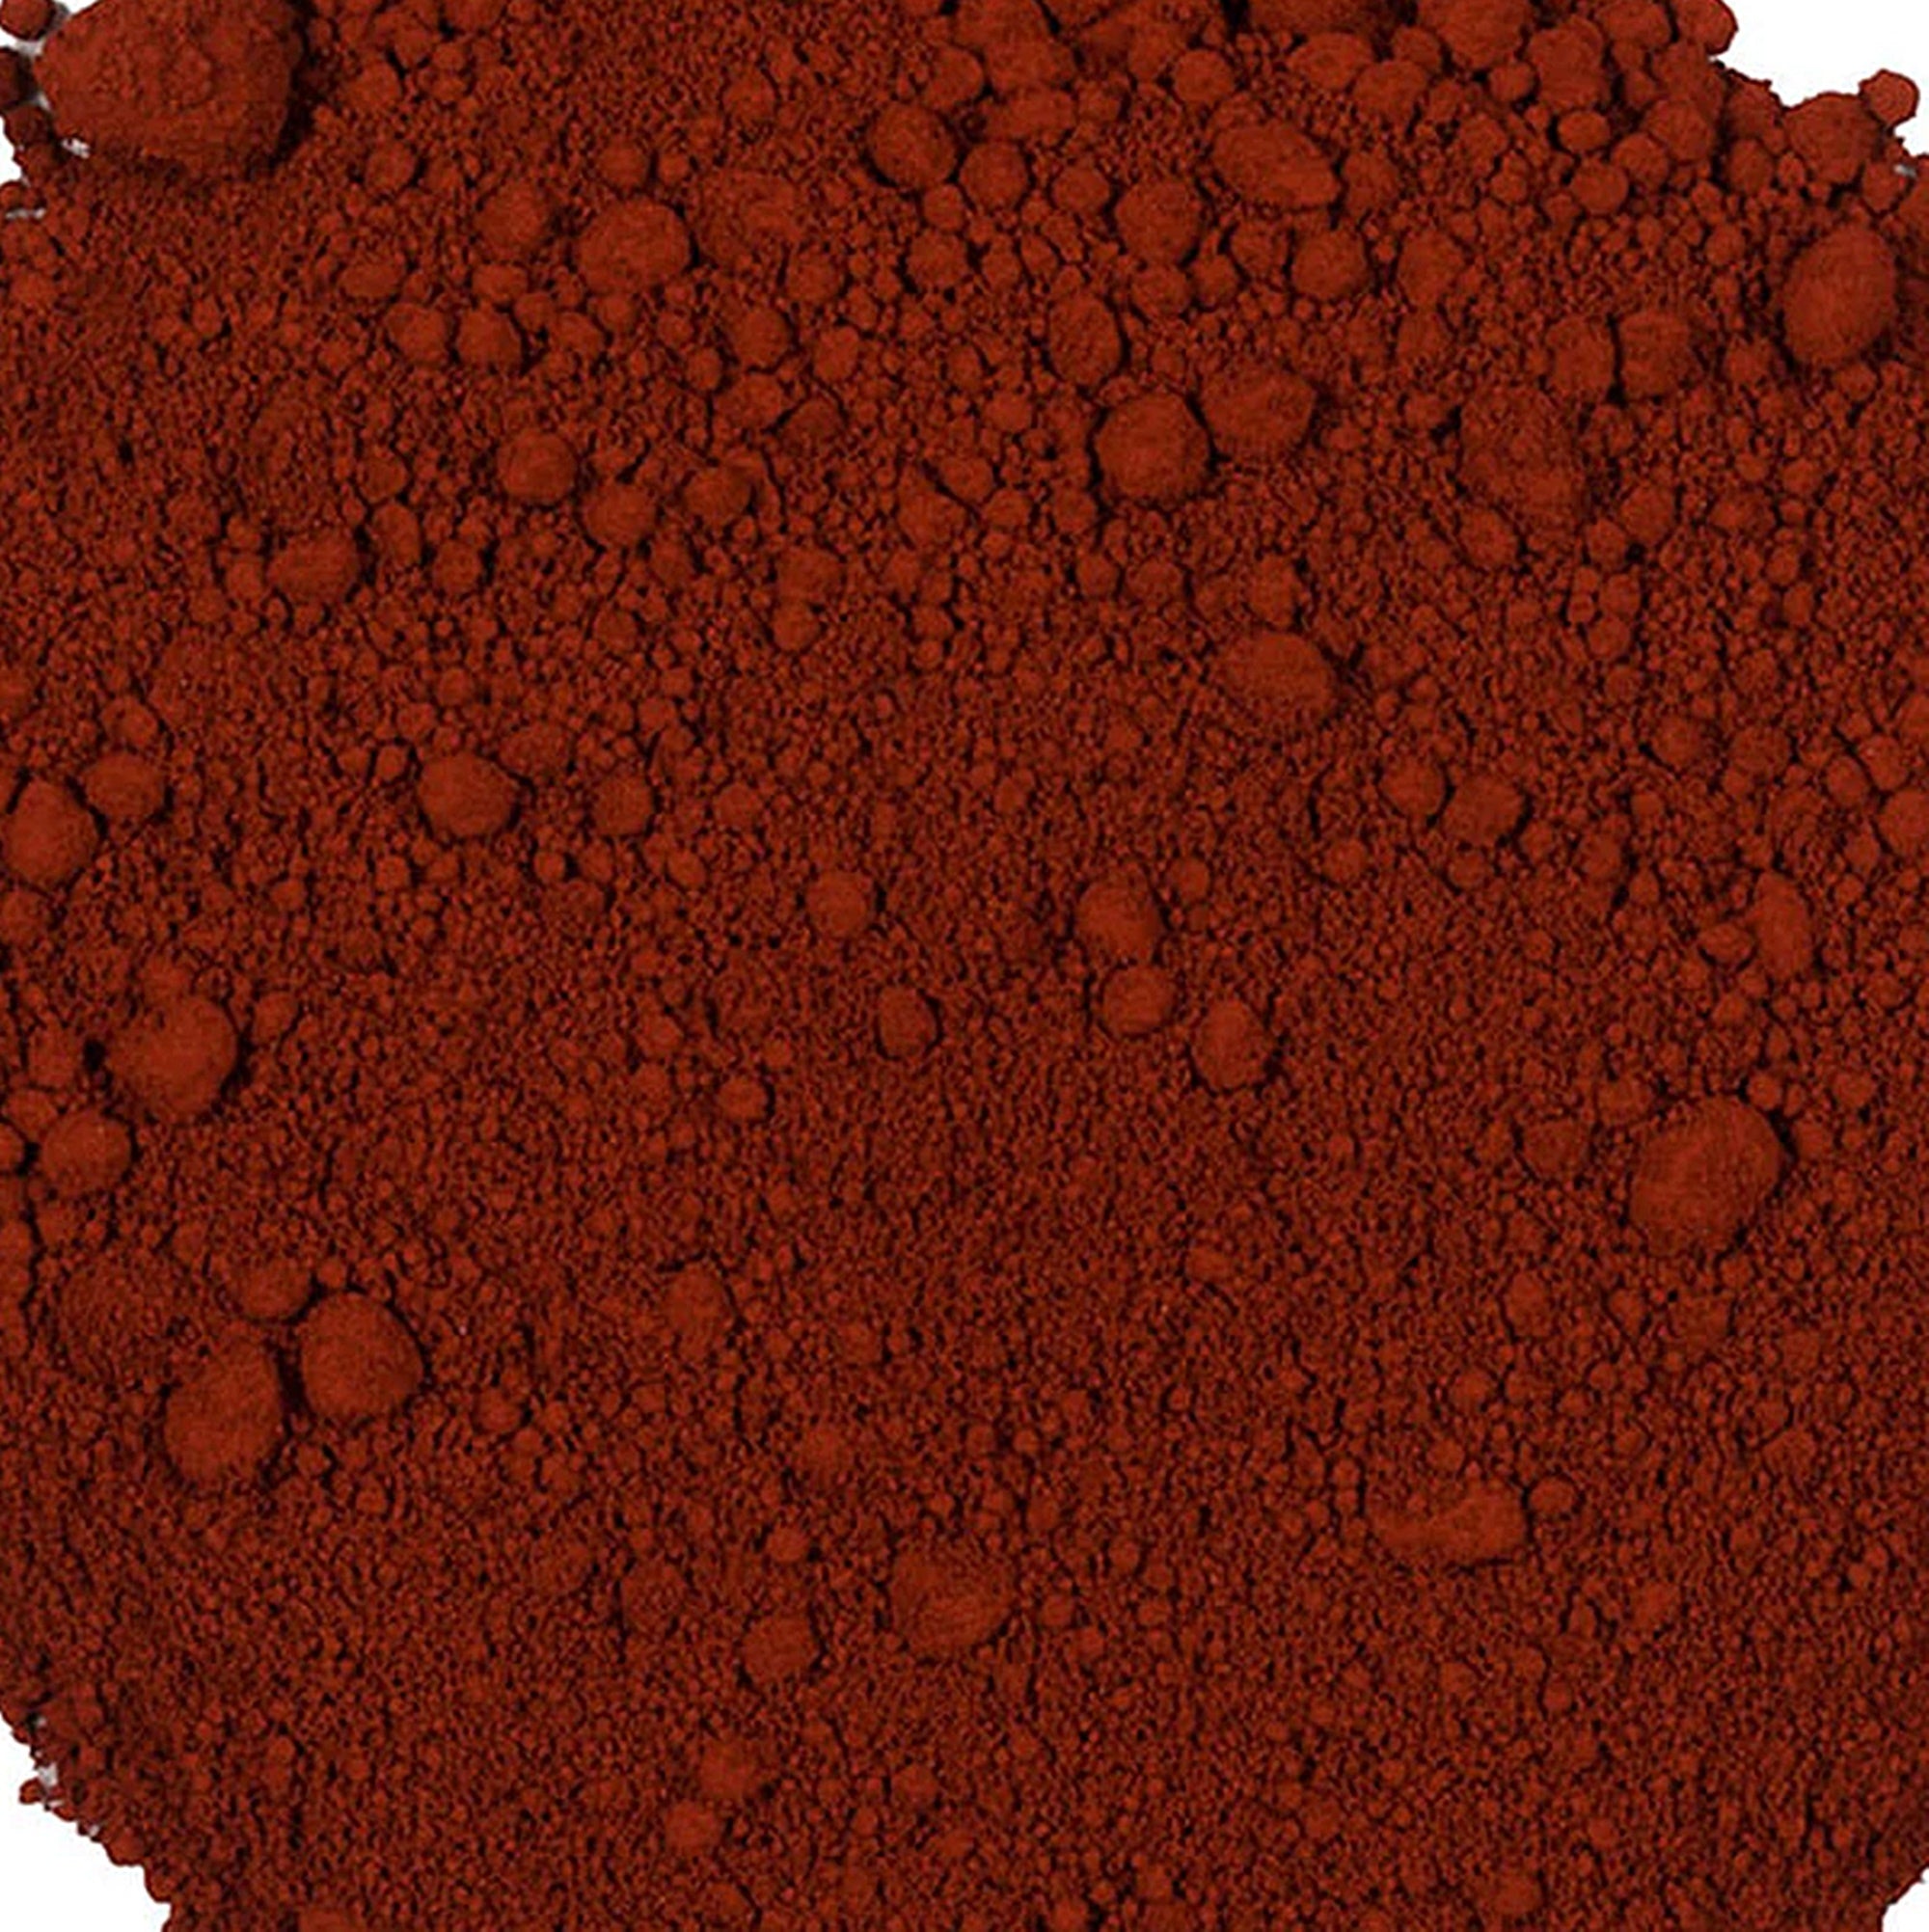 FUN Red Oxide Soap Colorant (1 oz.)